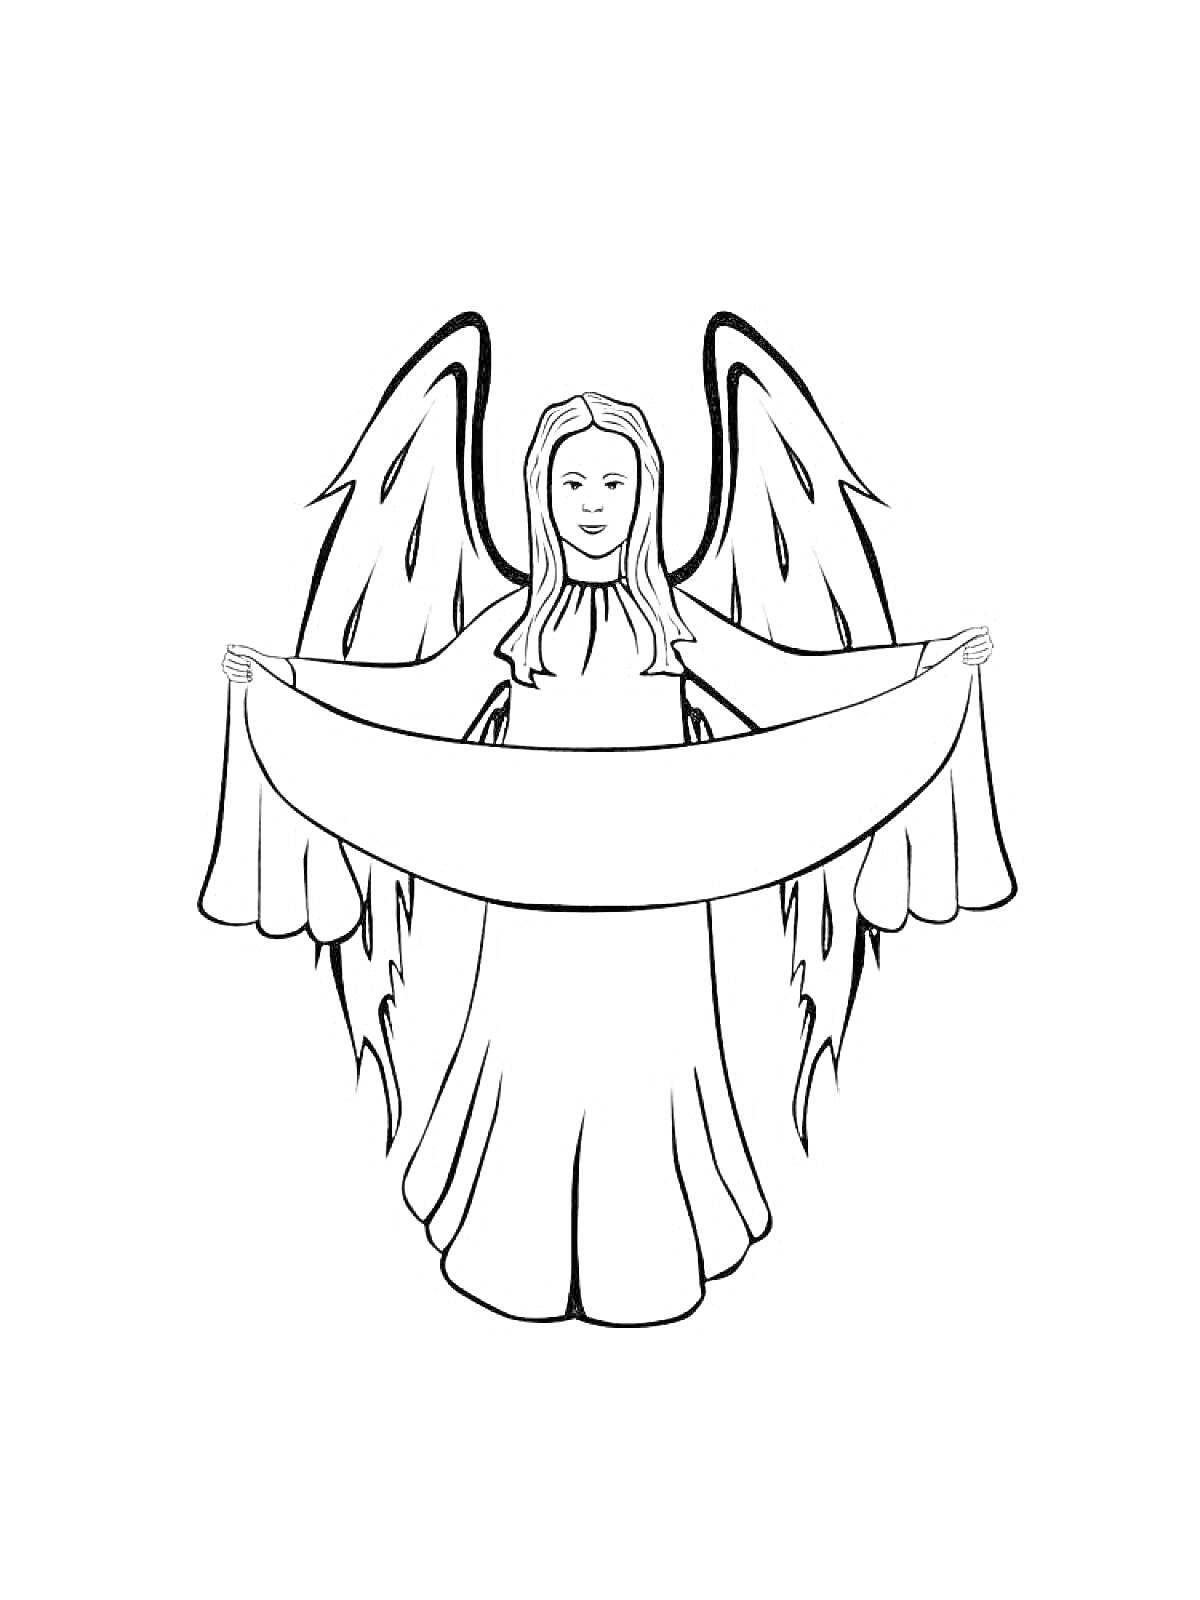 РаскраскаАнгел с расправленными крыльями, держащий ткань двумя руками